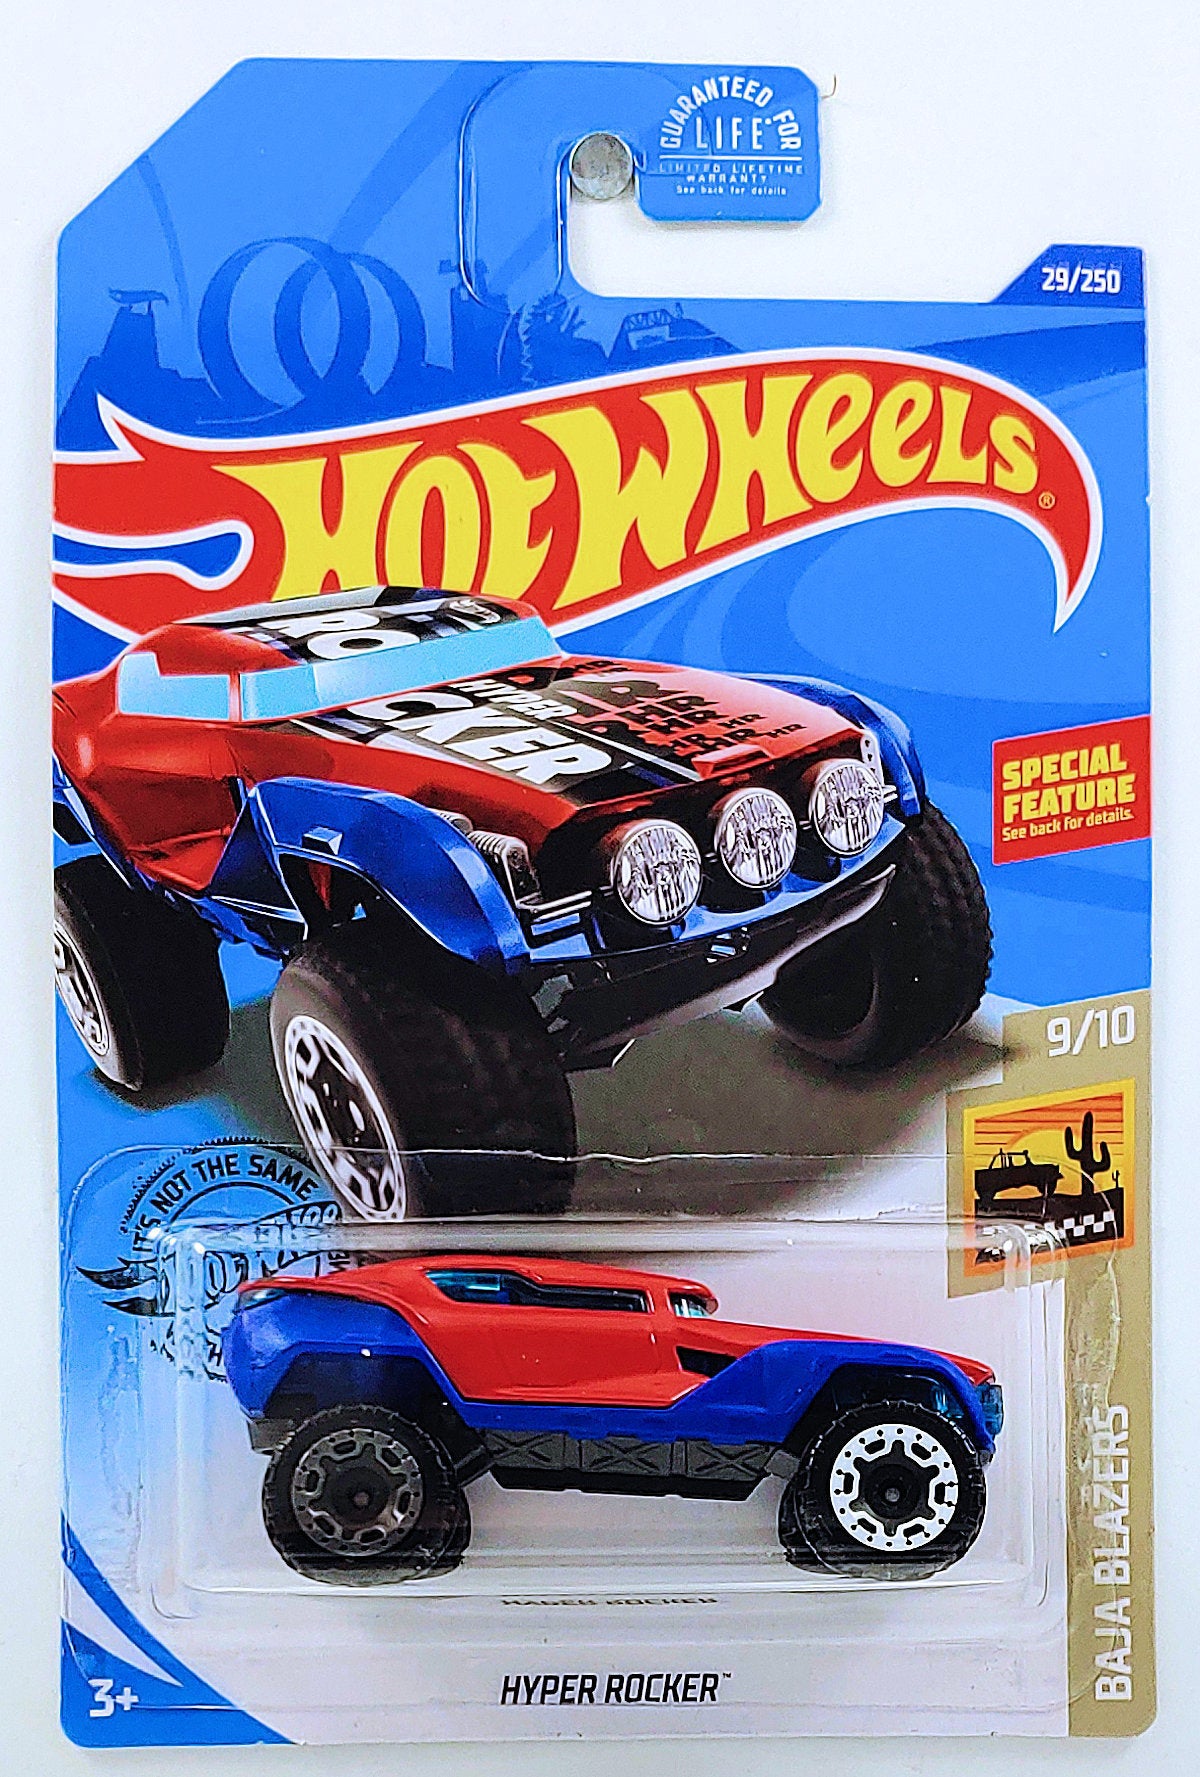 Hot Wheels 2020 - Collector # 029/250 - Baja Blazers 9/10 - Hyper Rocker - Red with Blue Fenders - Rear Wheels is Gray ERROR